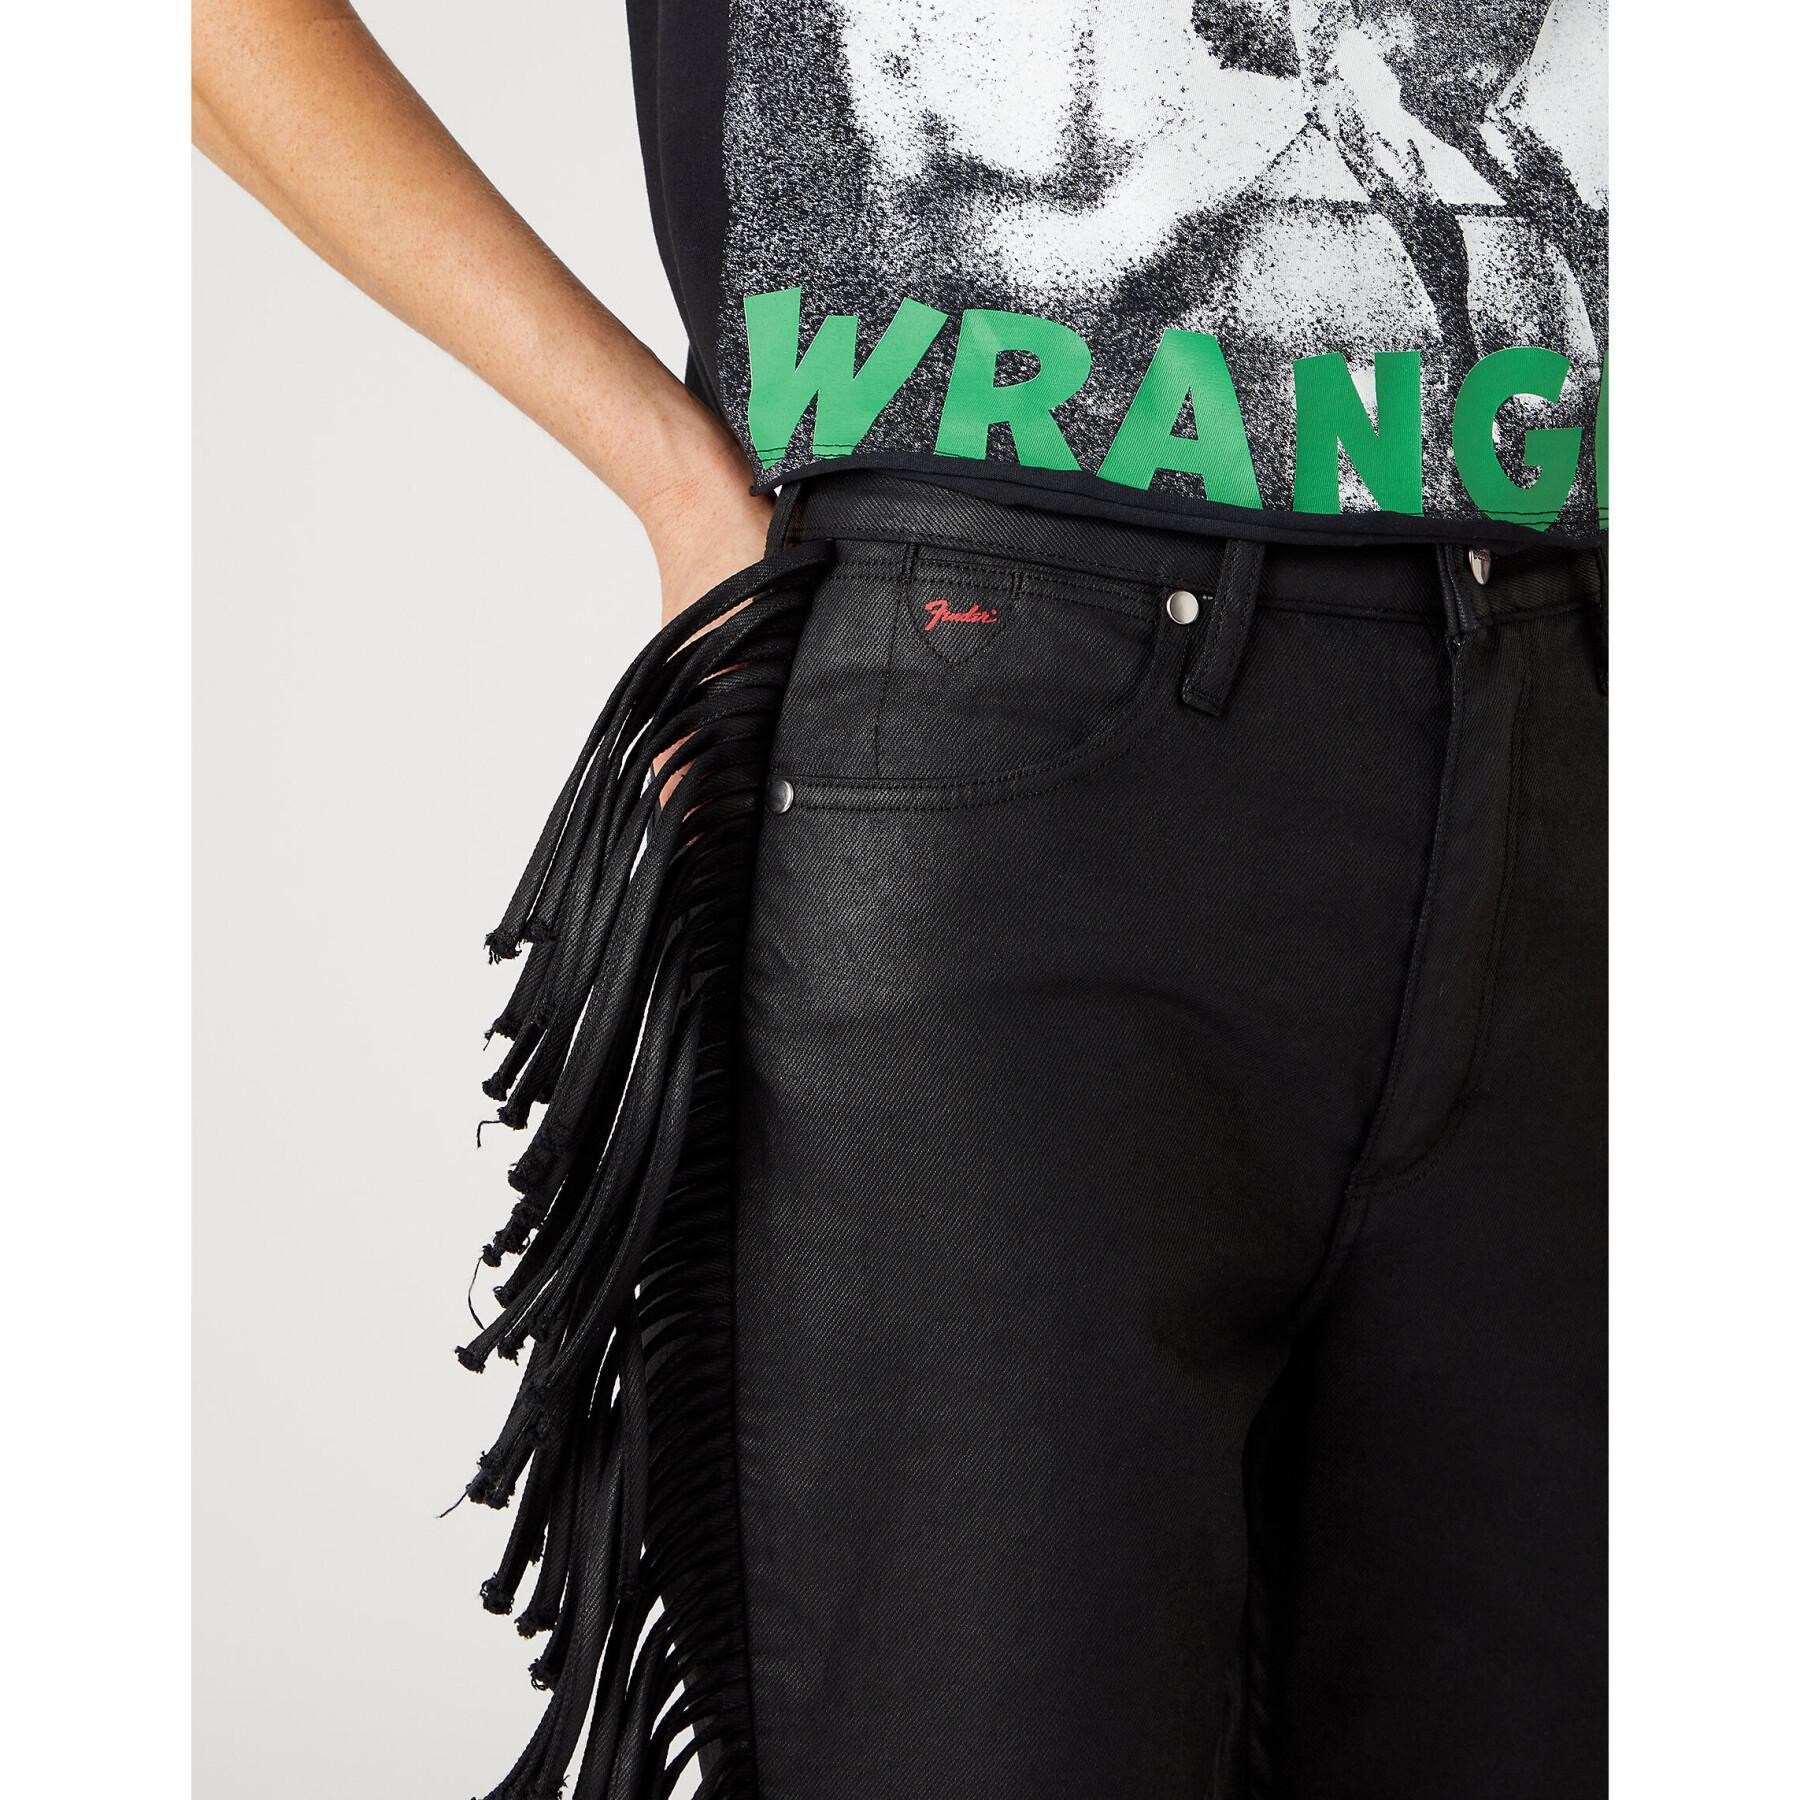 Jeans woman Wrangler Westward